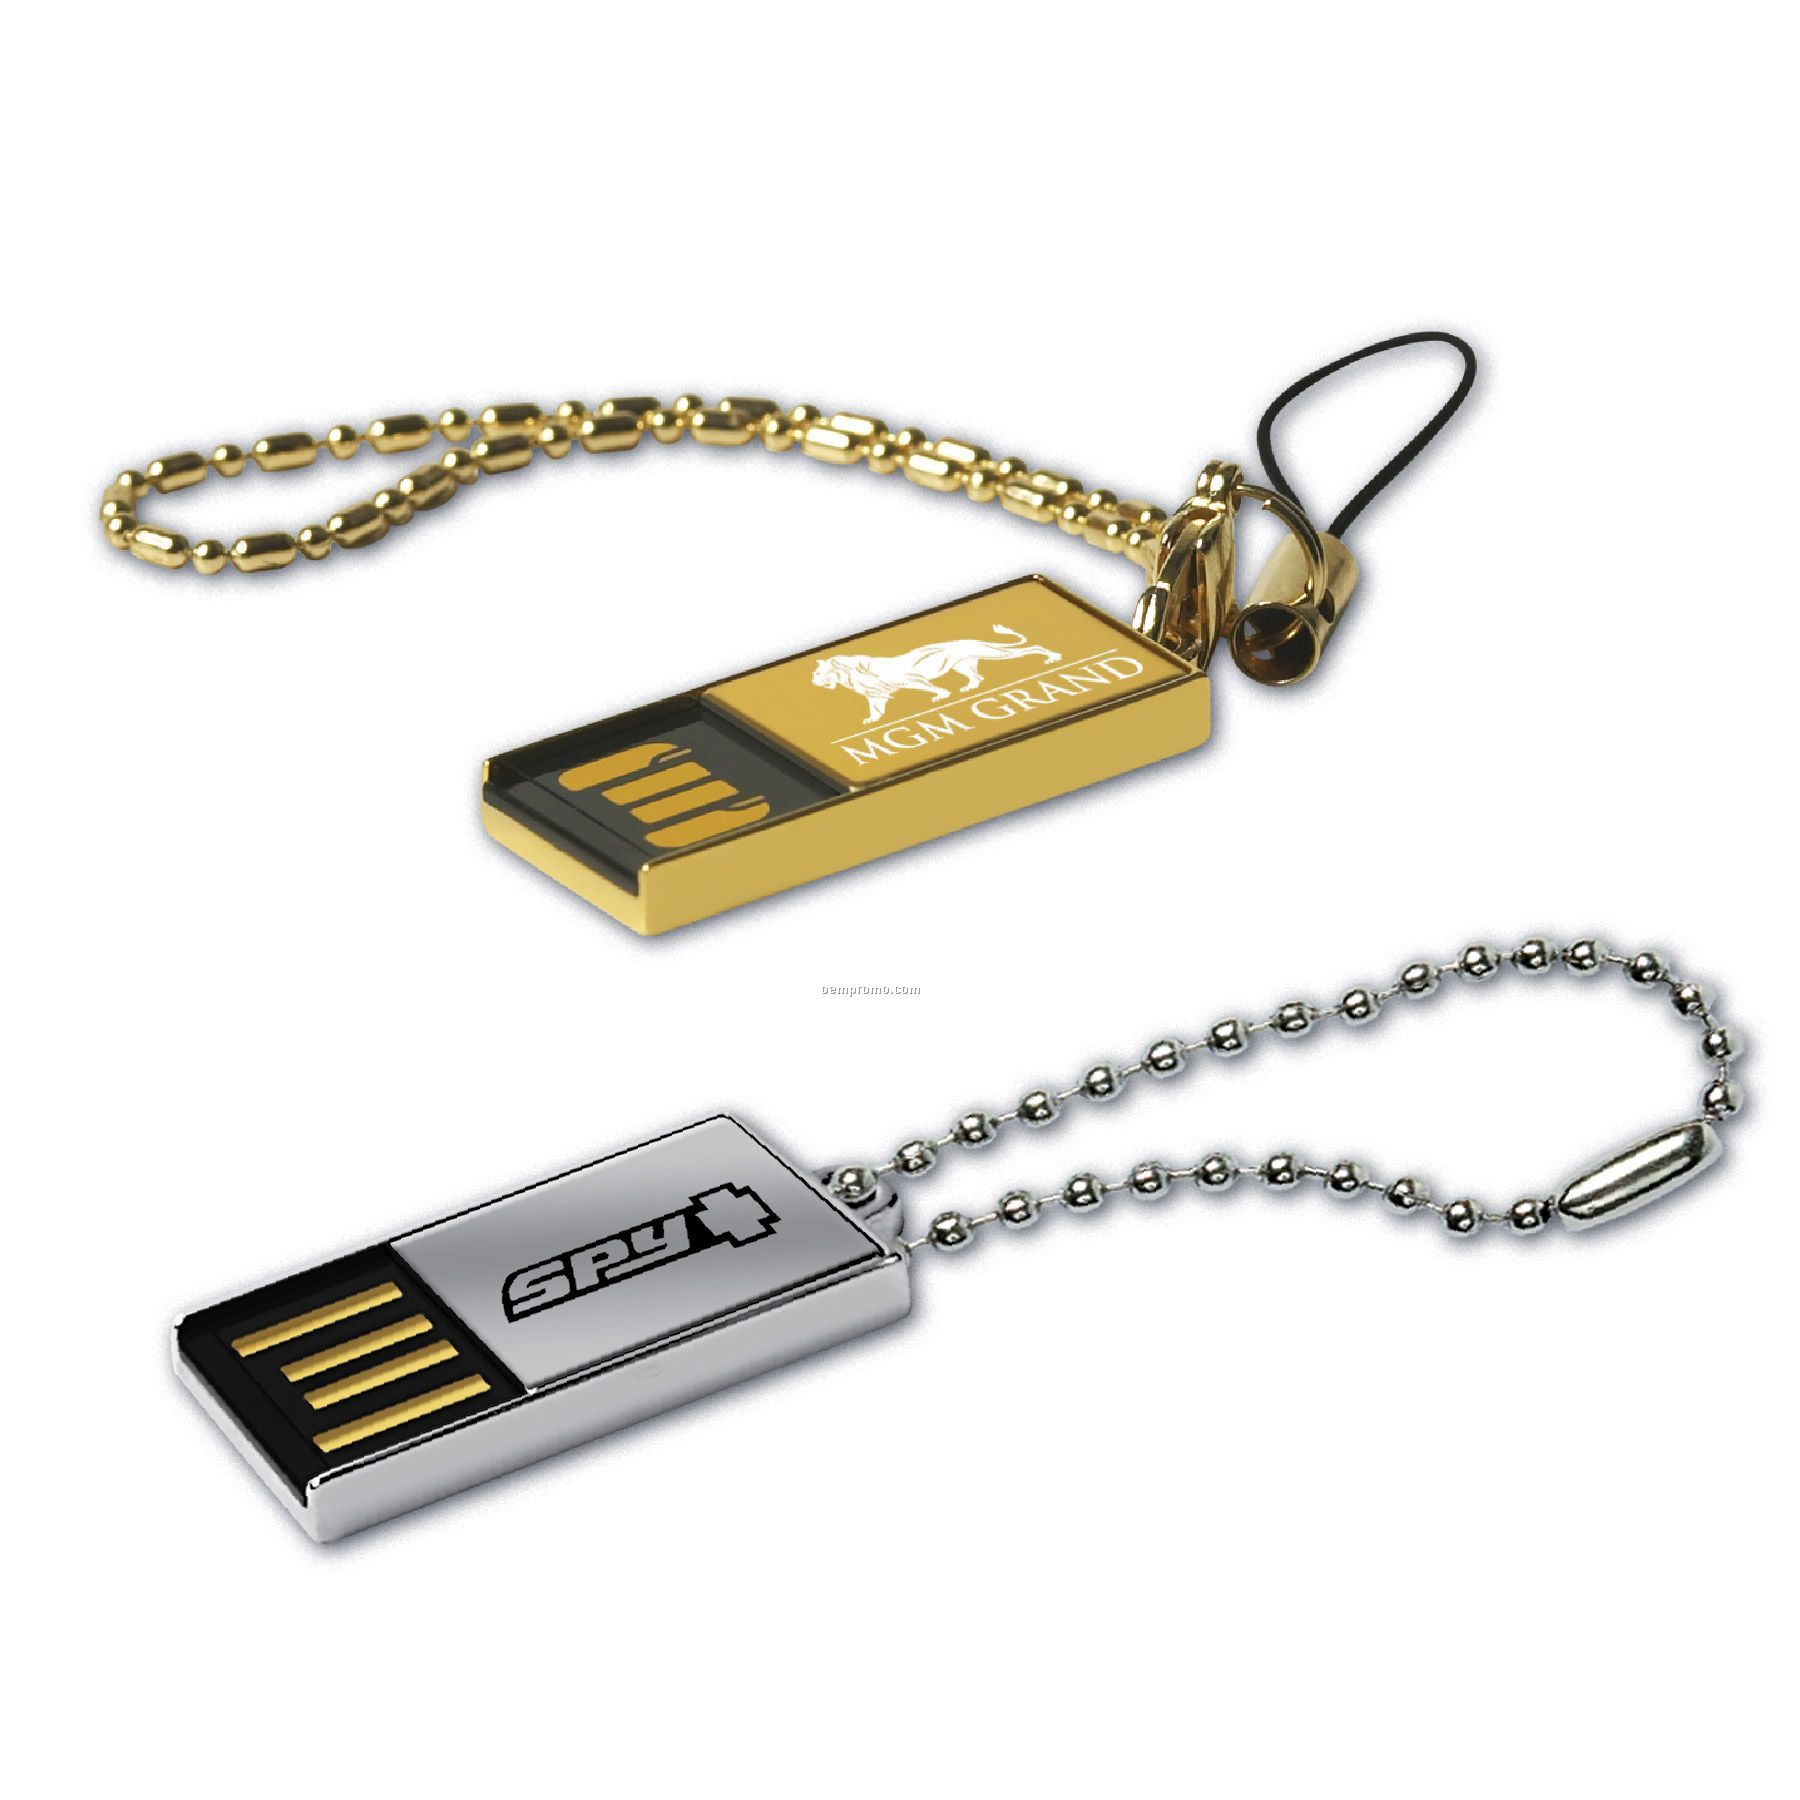 USB 2.0 007 Flash Drive Lz